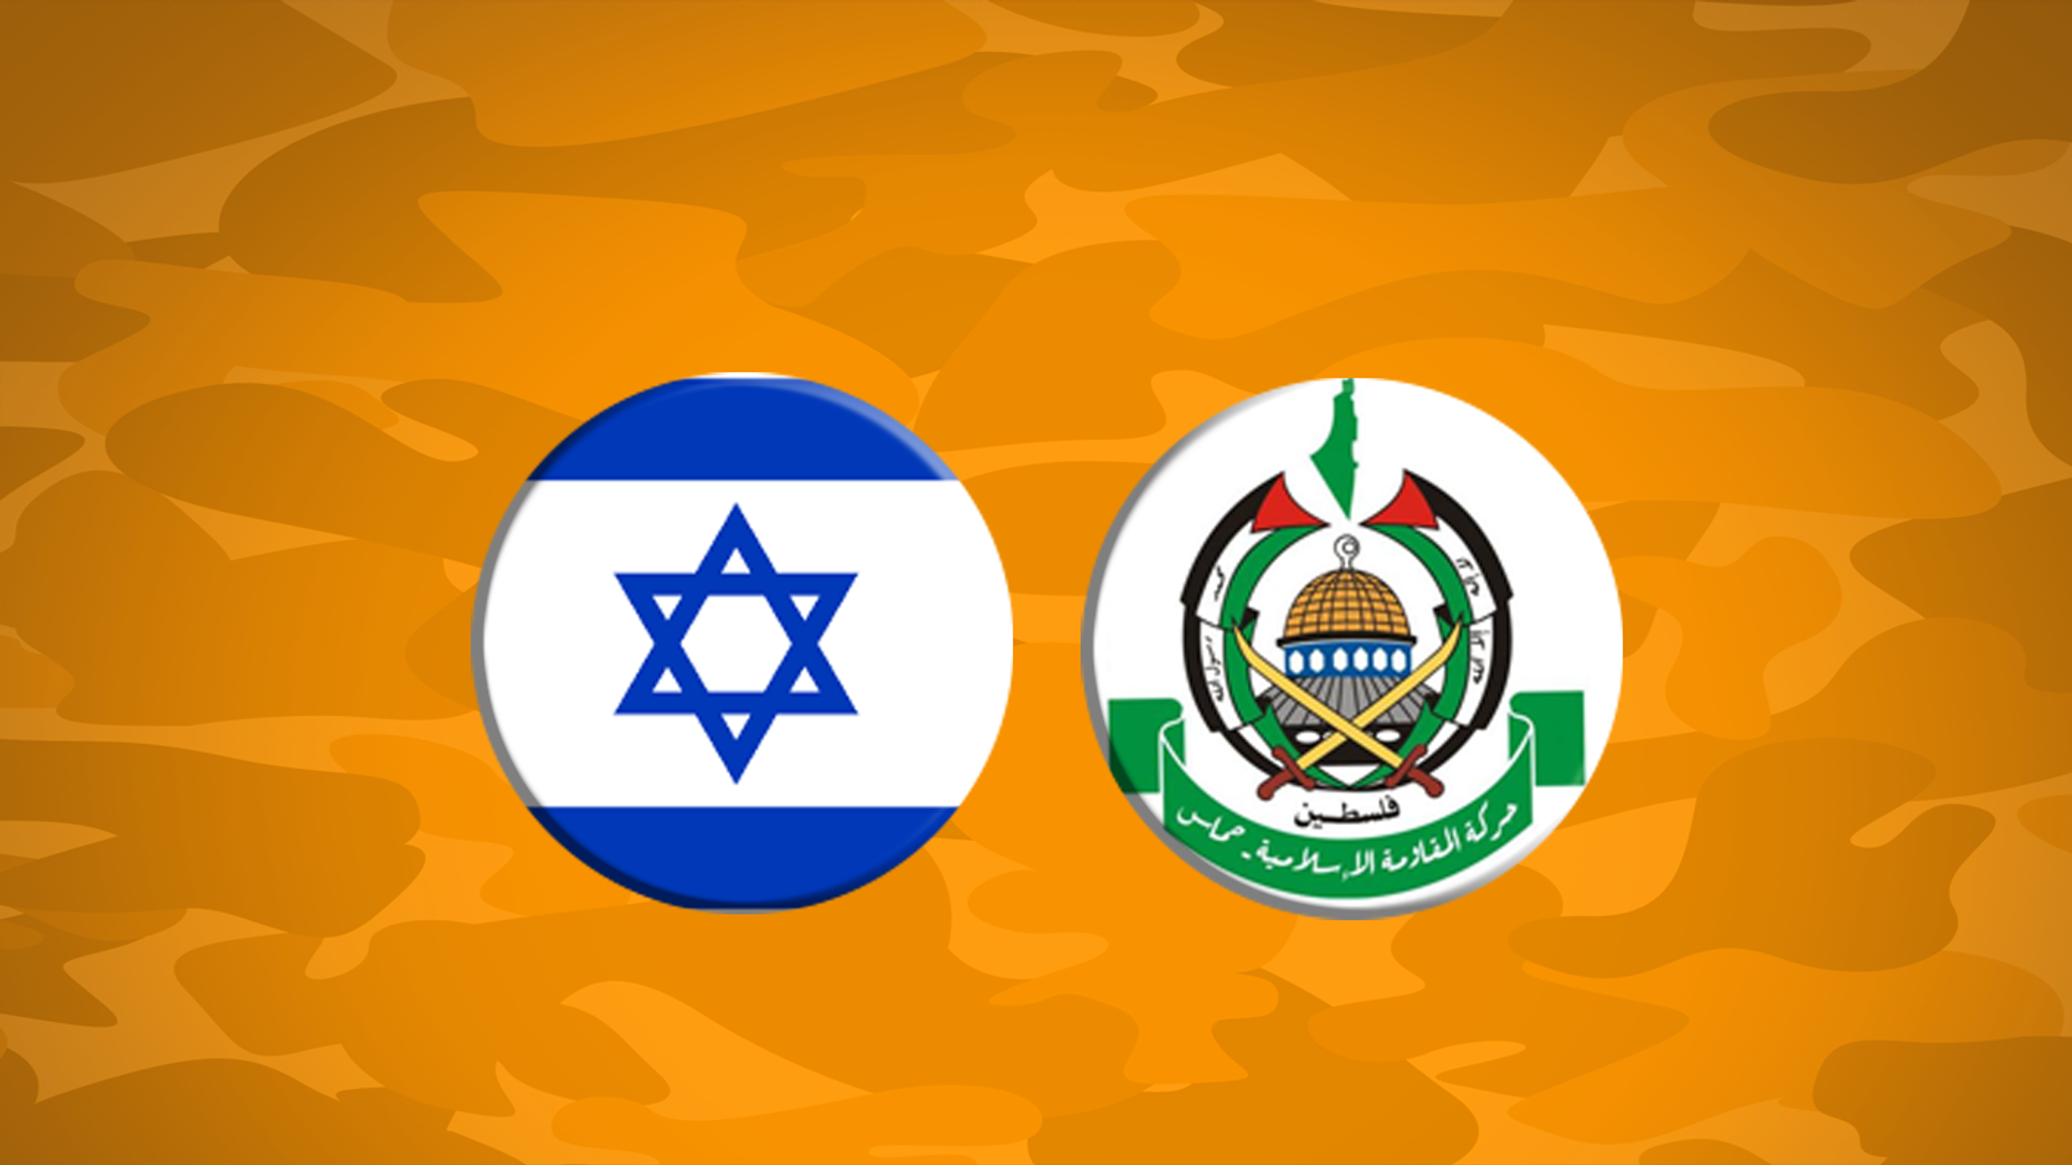 القدرات العسكرية لـ"حماس" في مواجهة الجيش الإسرائيلي